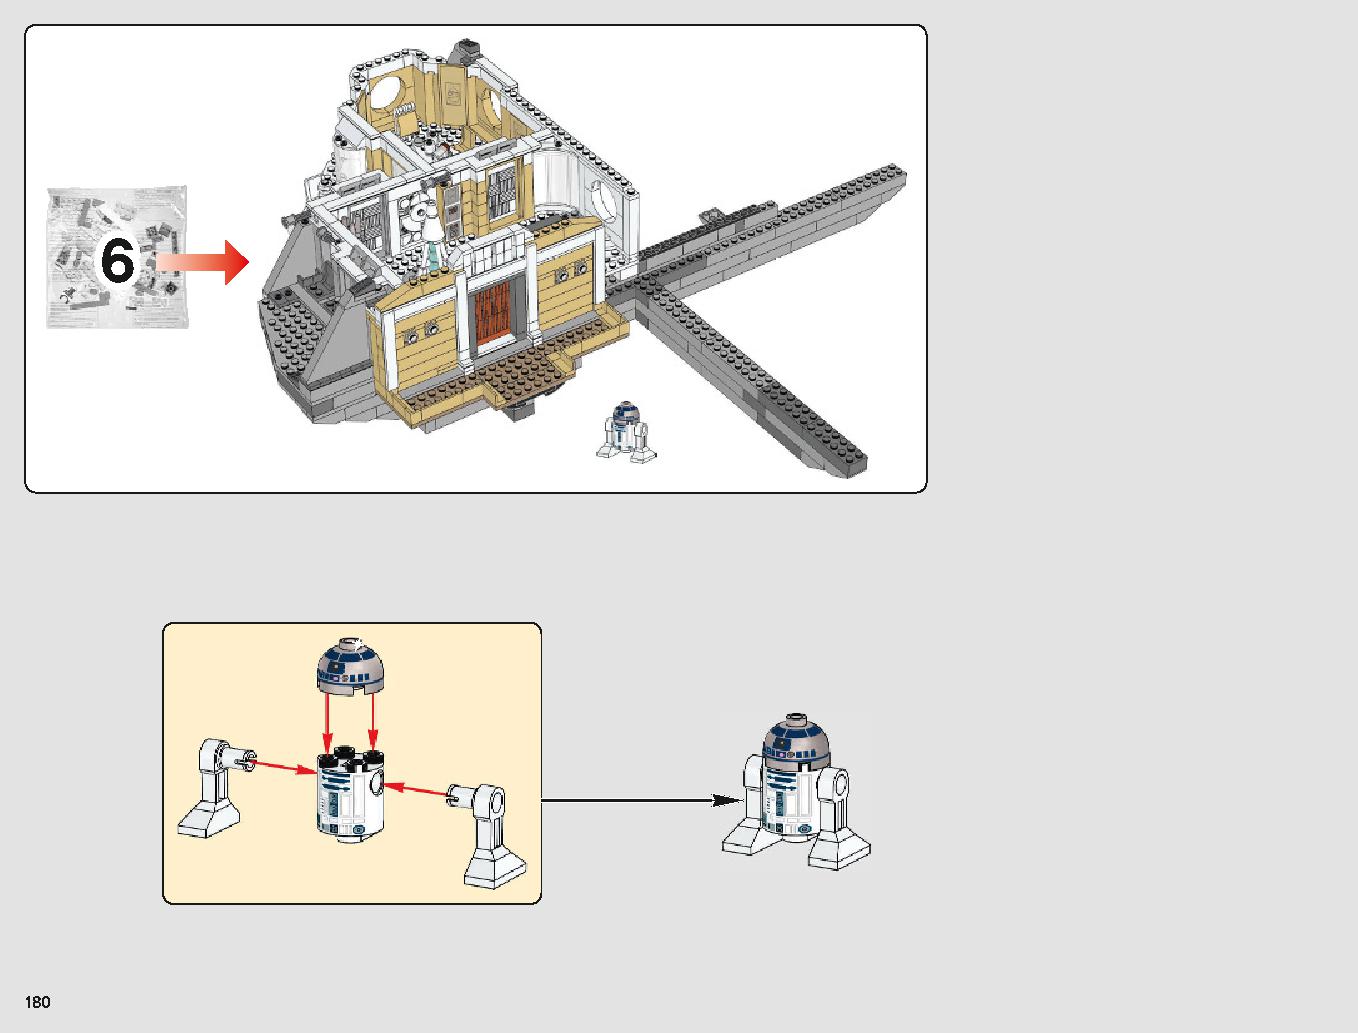 クラウド・シティ 75222 レゴの商品情報 レゴの説明書・組立方法 180 page